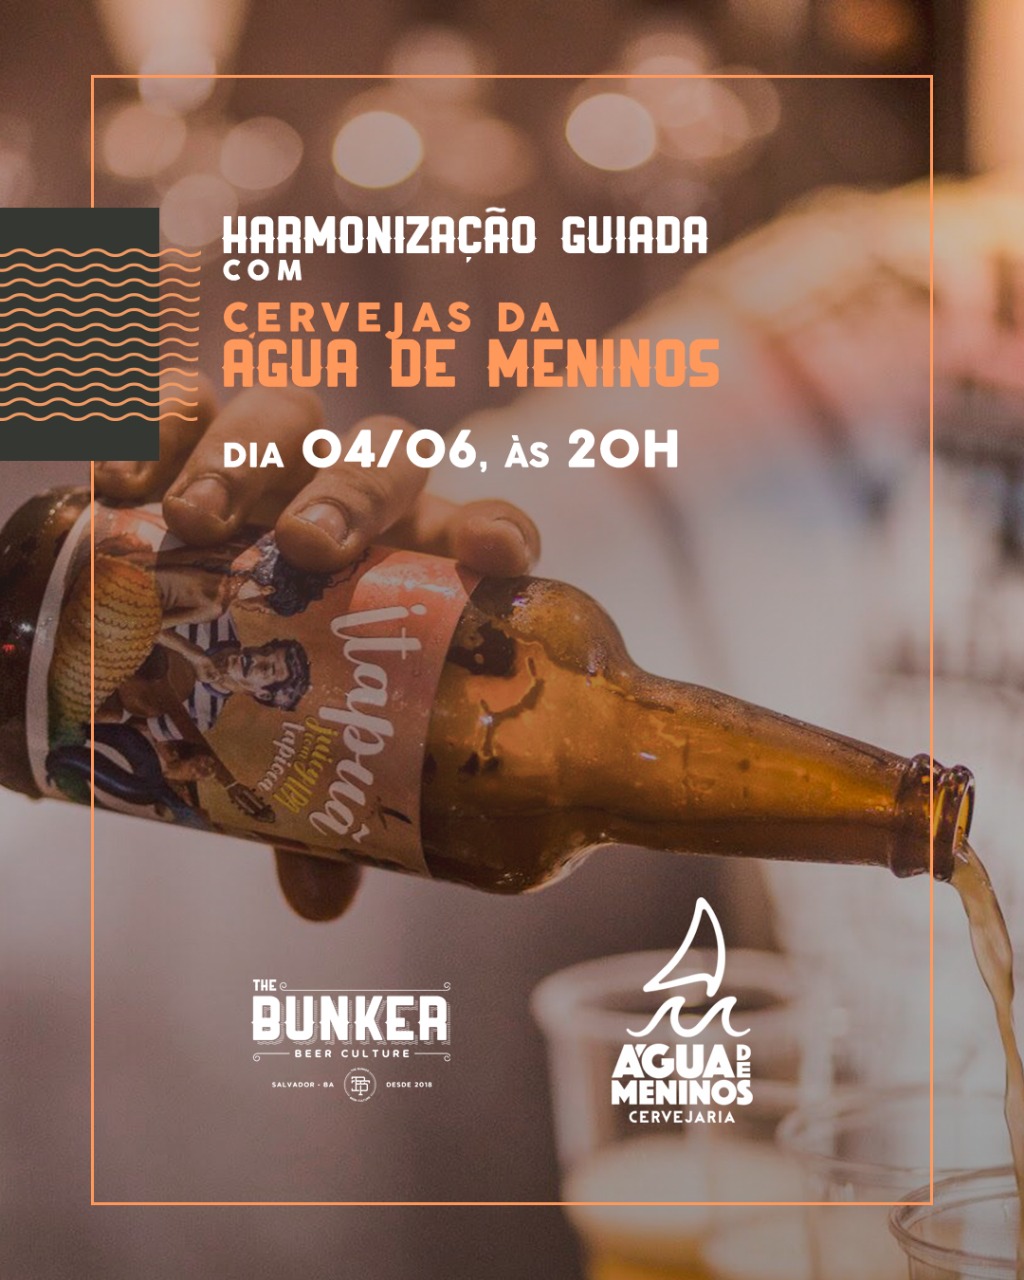 The Bunker oferece harmonização guiadas com cervejas Água de Meninos